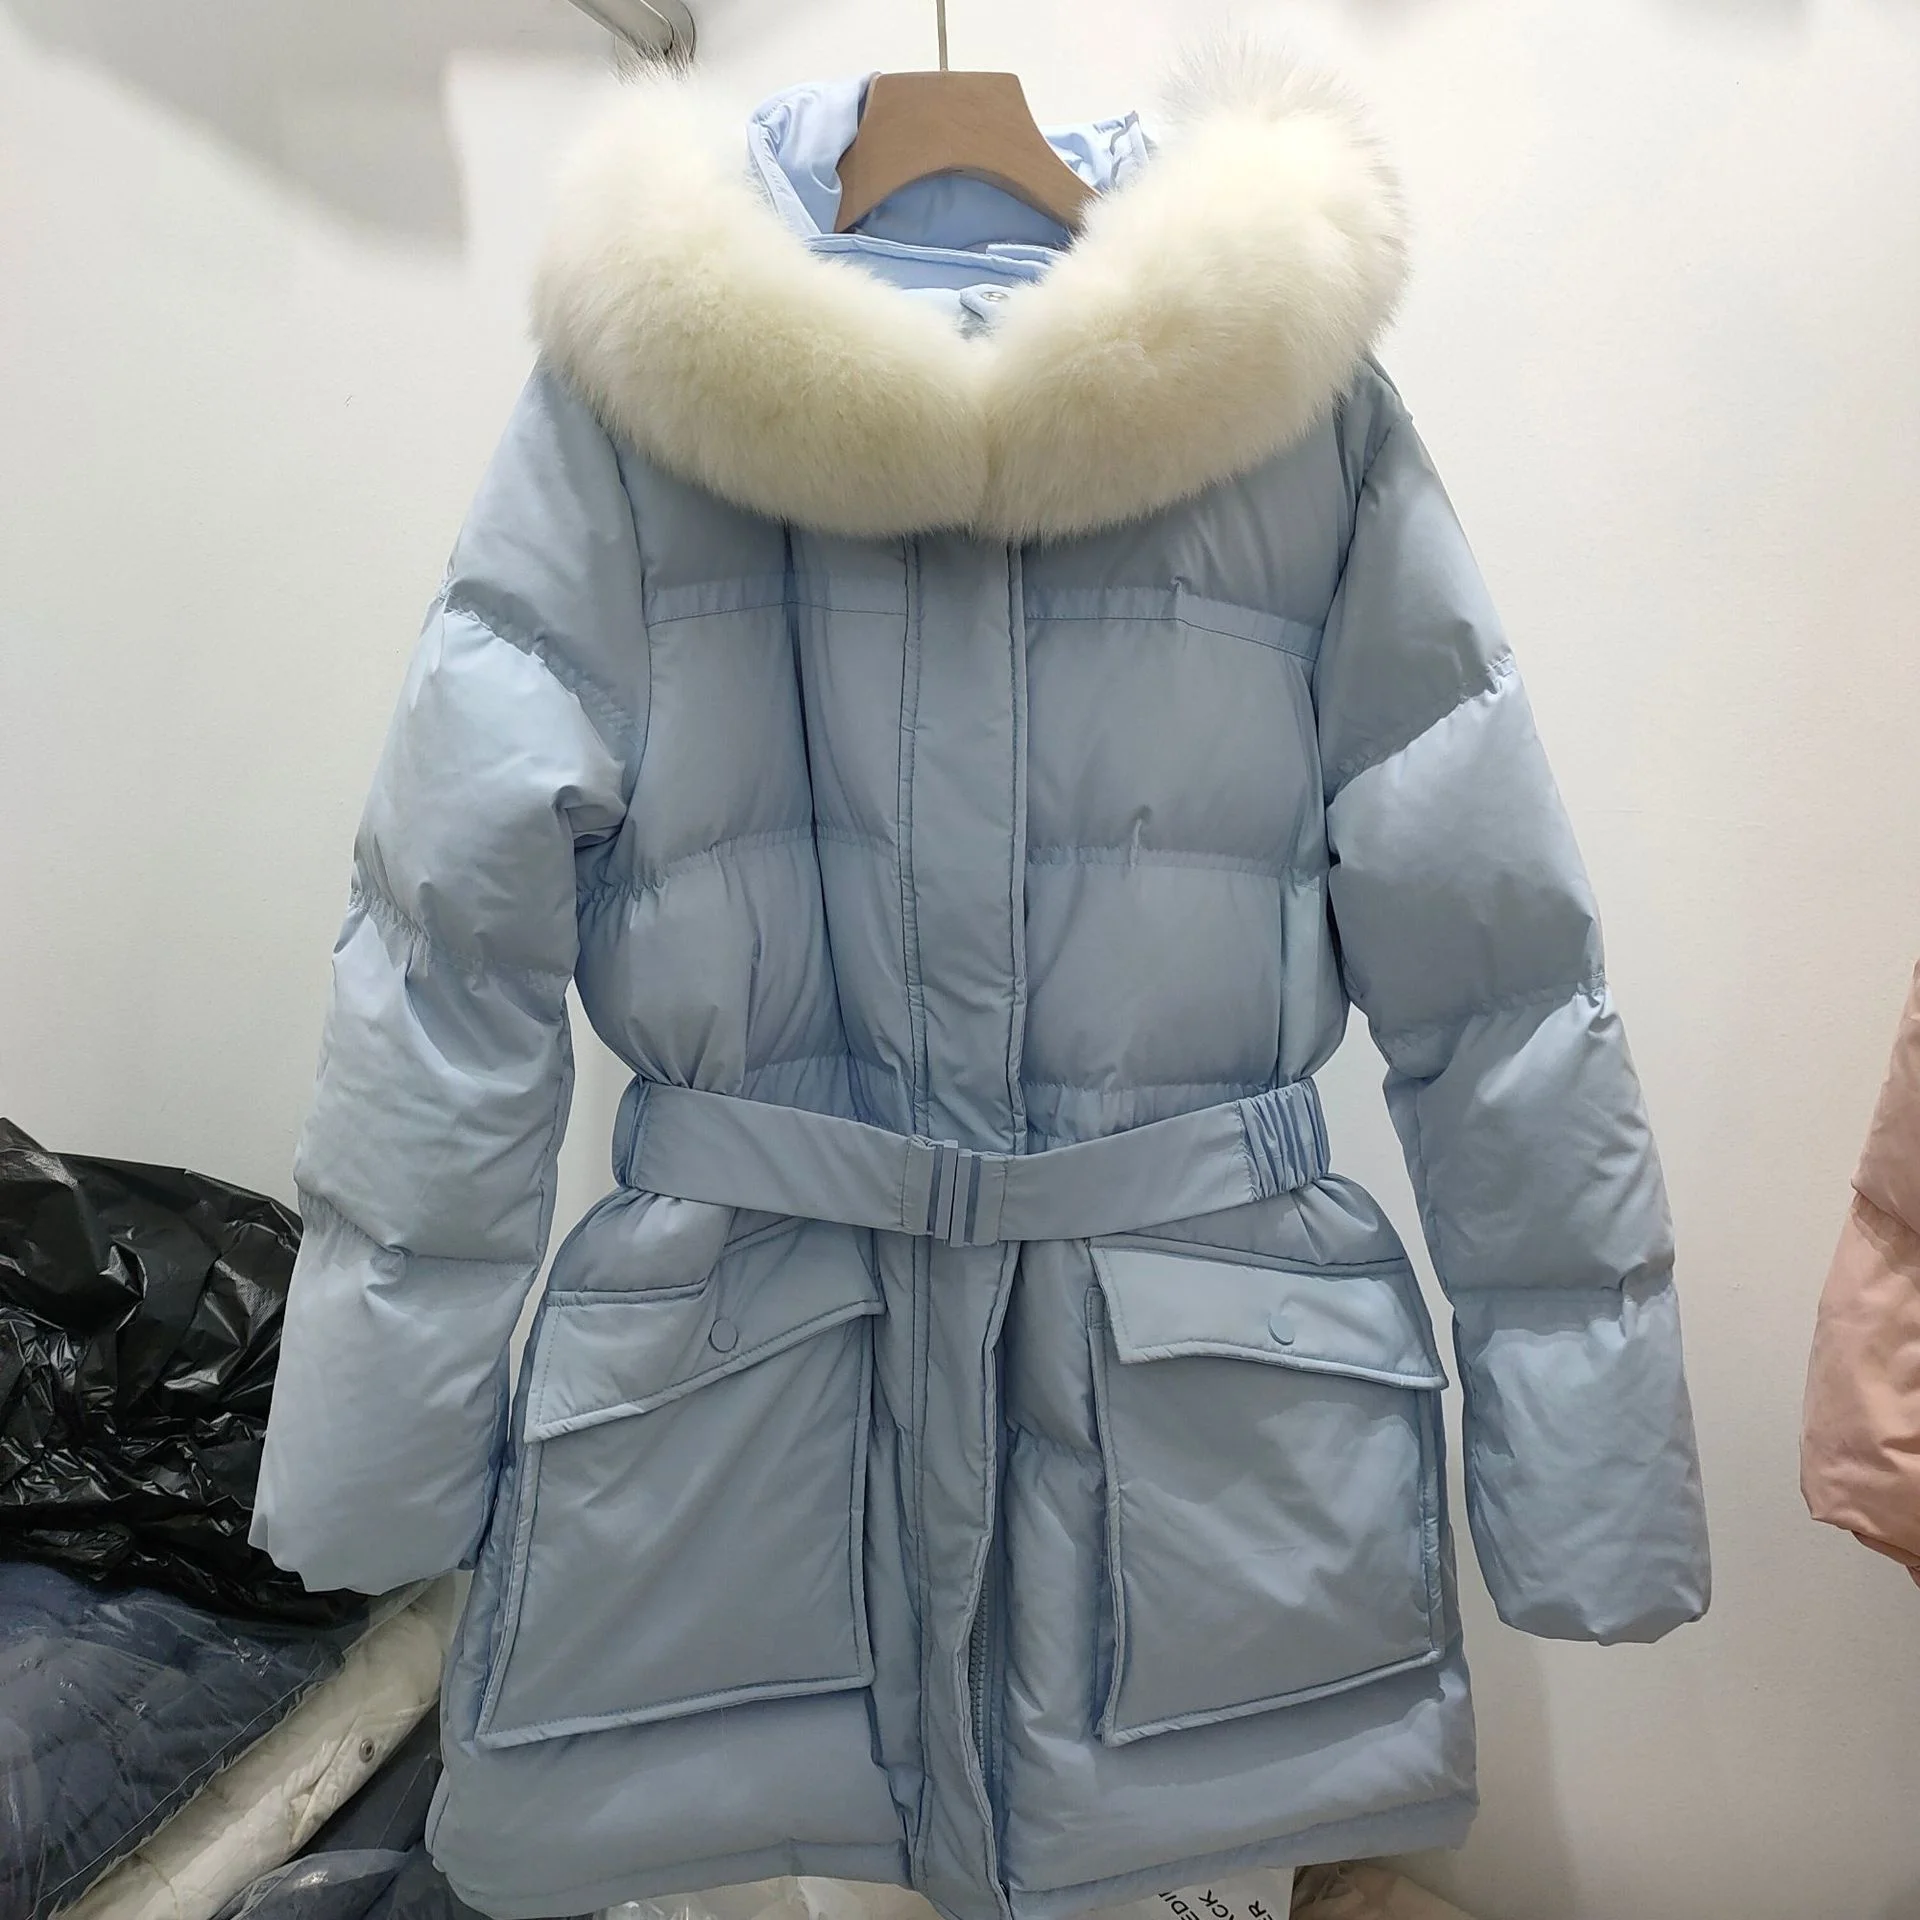 Kore dongdamen 2021 sonbahar ve kış yeni moda aşağı ceket kadın orta ve uzun tarzı ile ince bel ve beyaz ördek 1